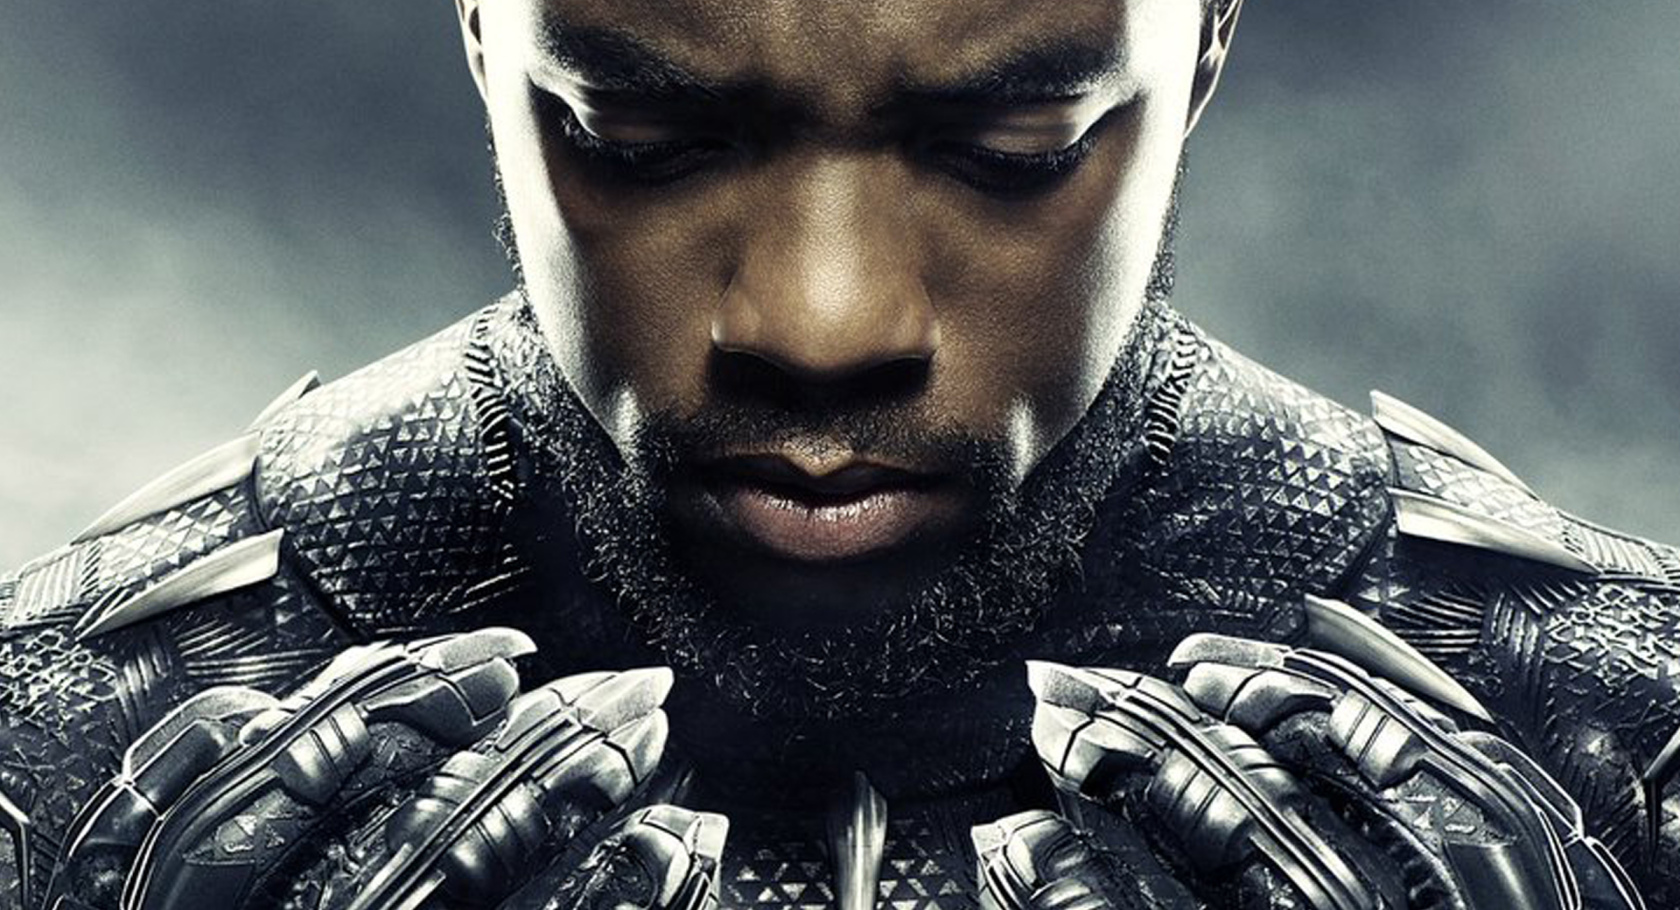 Oscar 2019 | Chadwick Boseman celebra indicações de Pantera Negra: “Fizemos História”